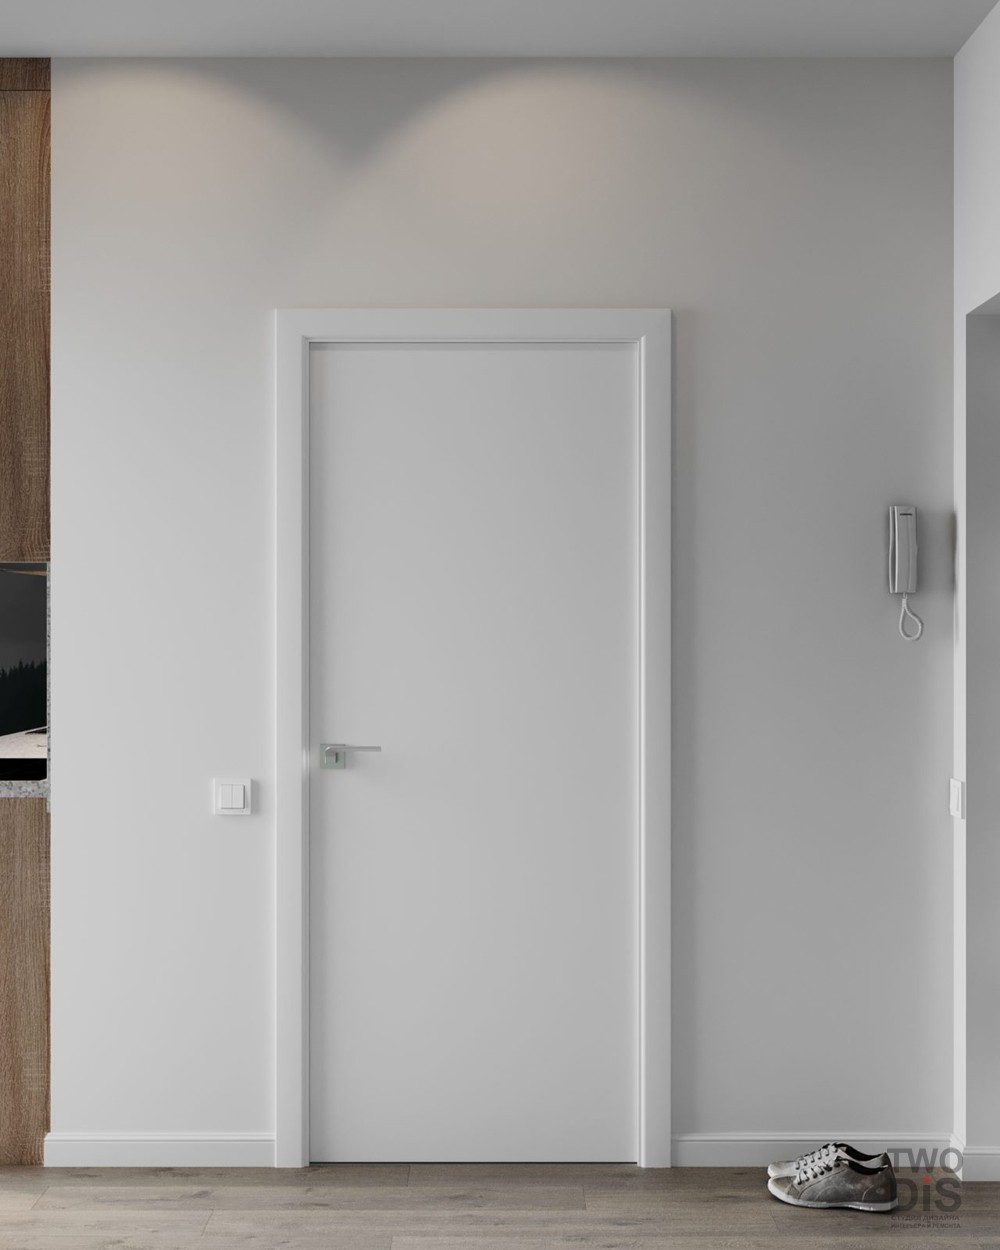 Дизайн проект квартиры ЖК Шушары - дверь в ванную комнату однокомнатной студии, Санкт-Петербург